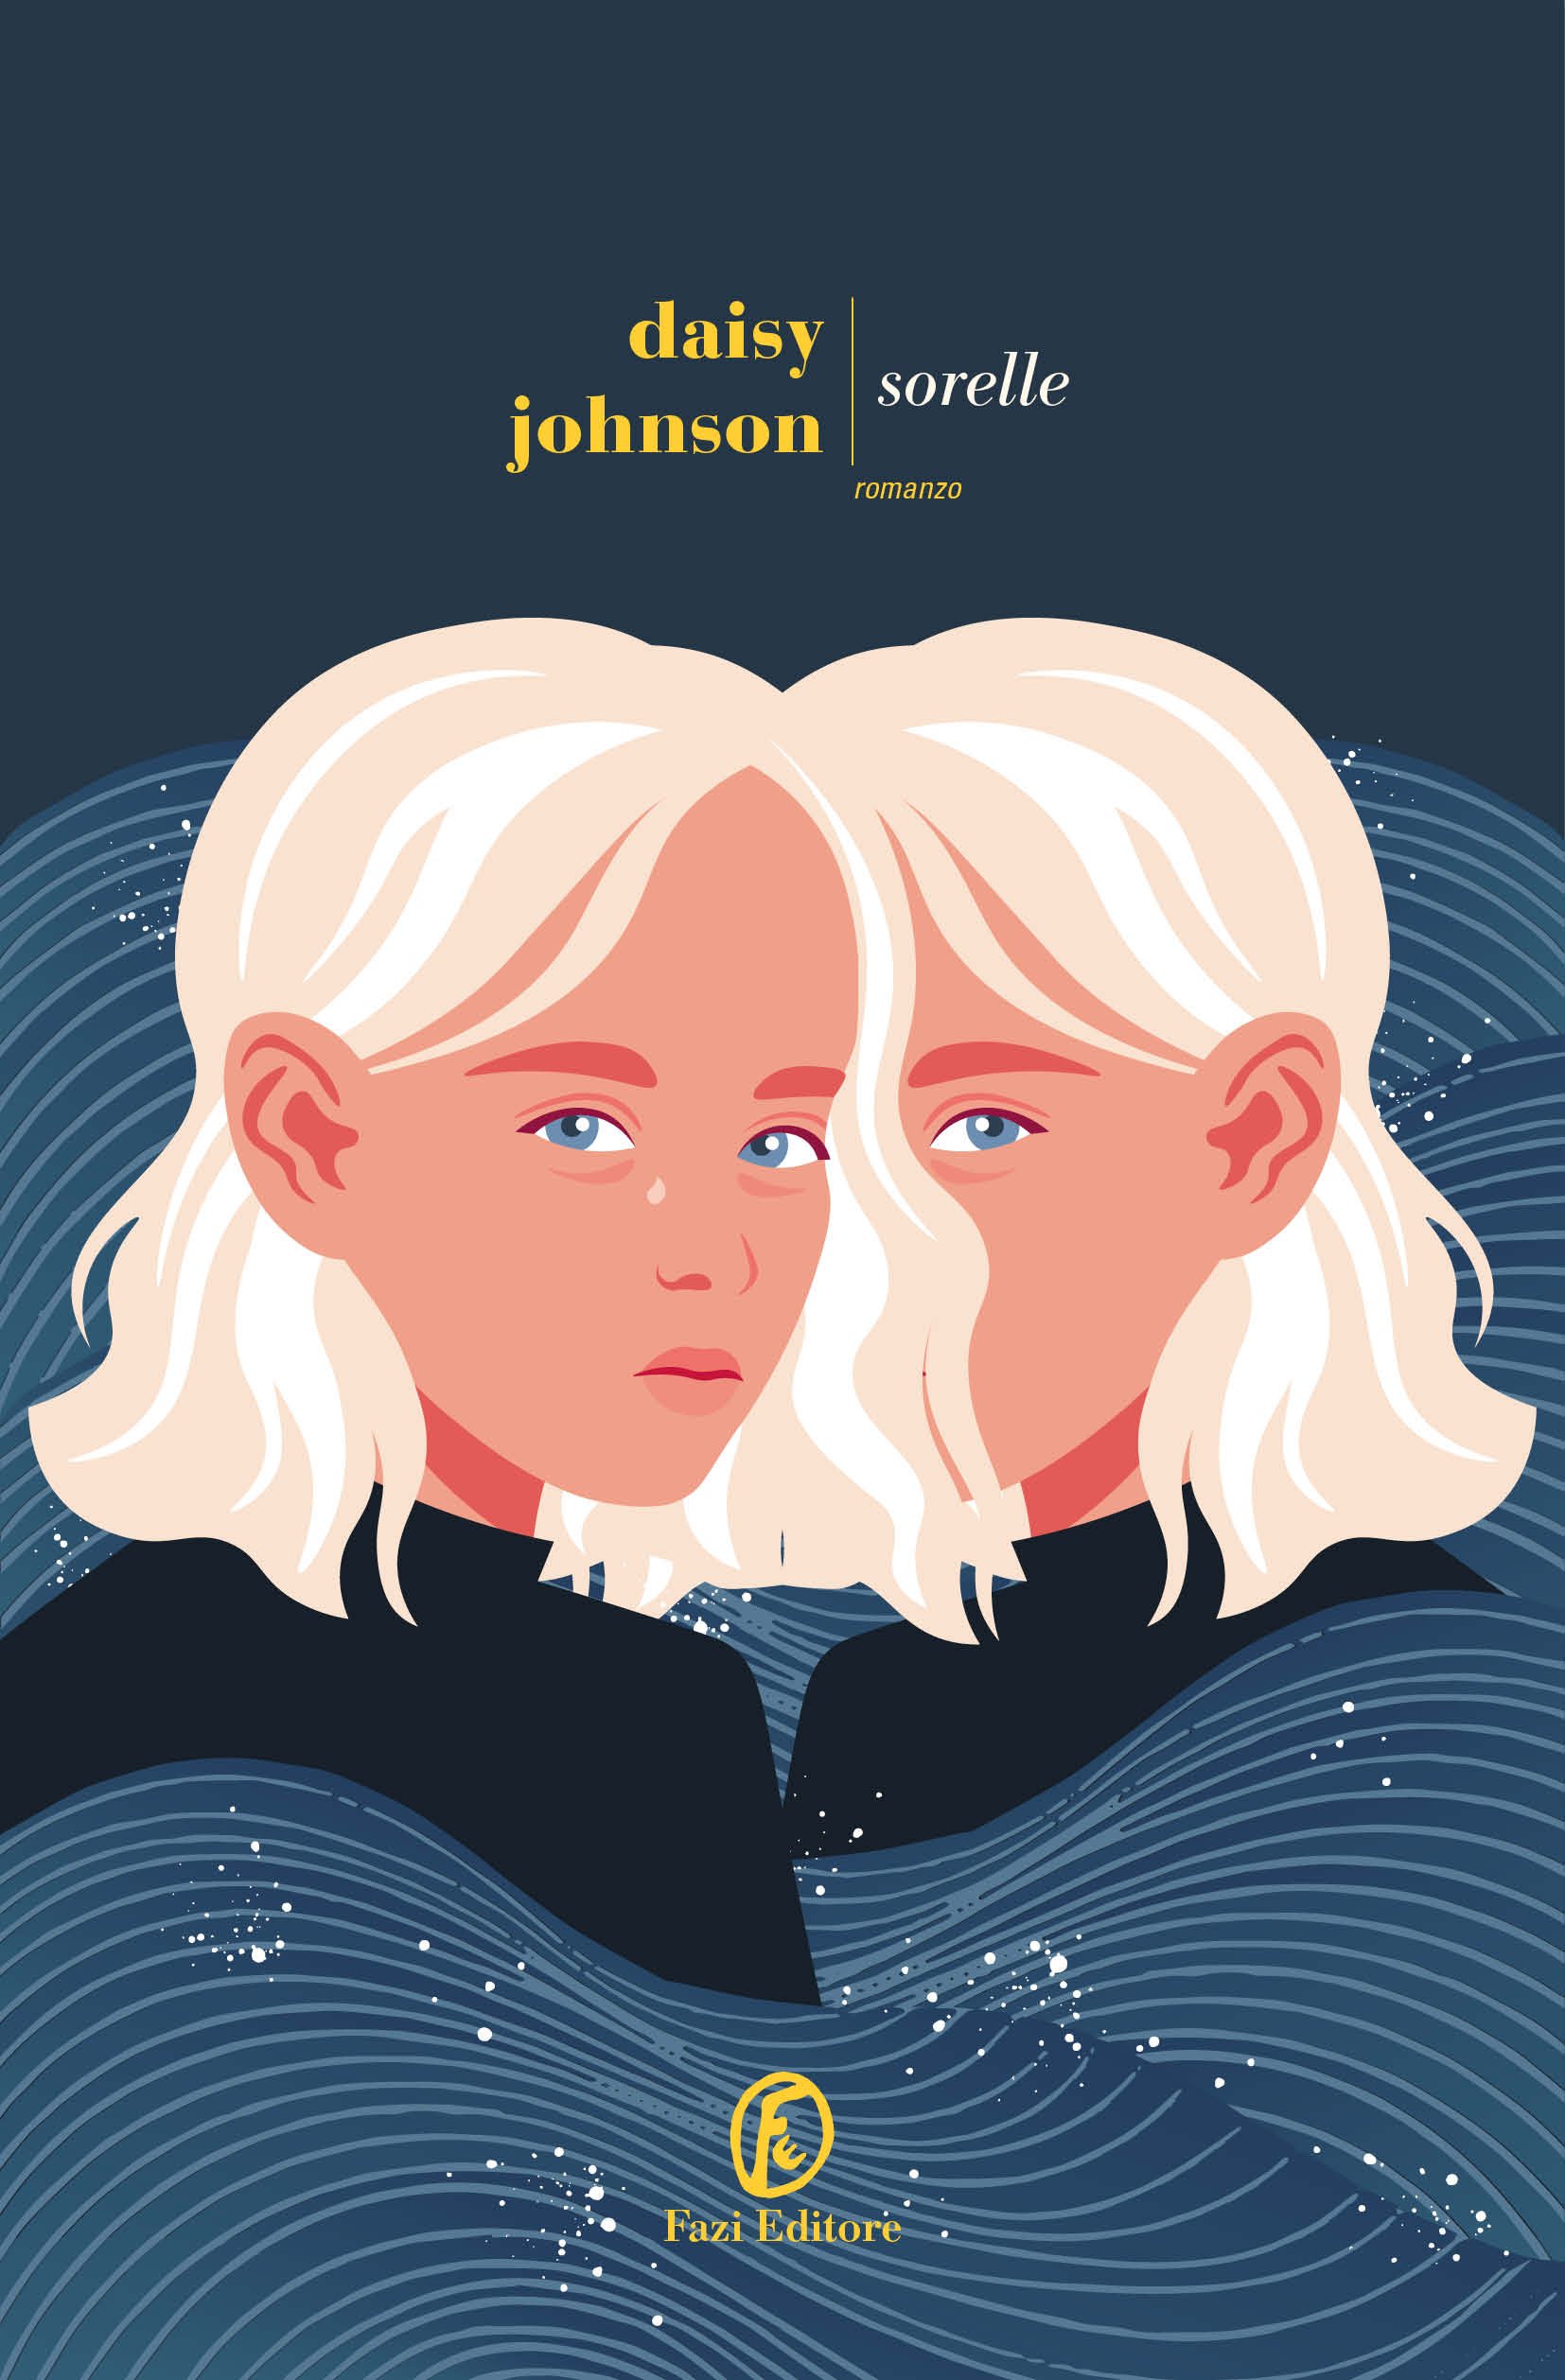 Copertina del libro sorelle di Daisy Johnson, illustrazione di due sorelle adolescenti bionde su sfondo blu scuro.